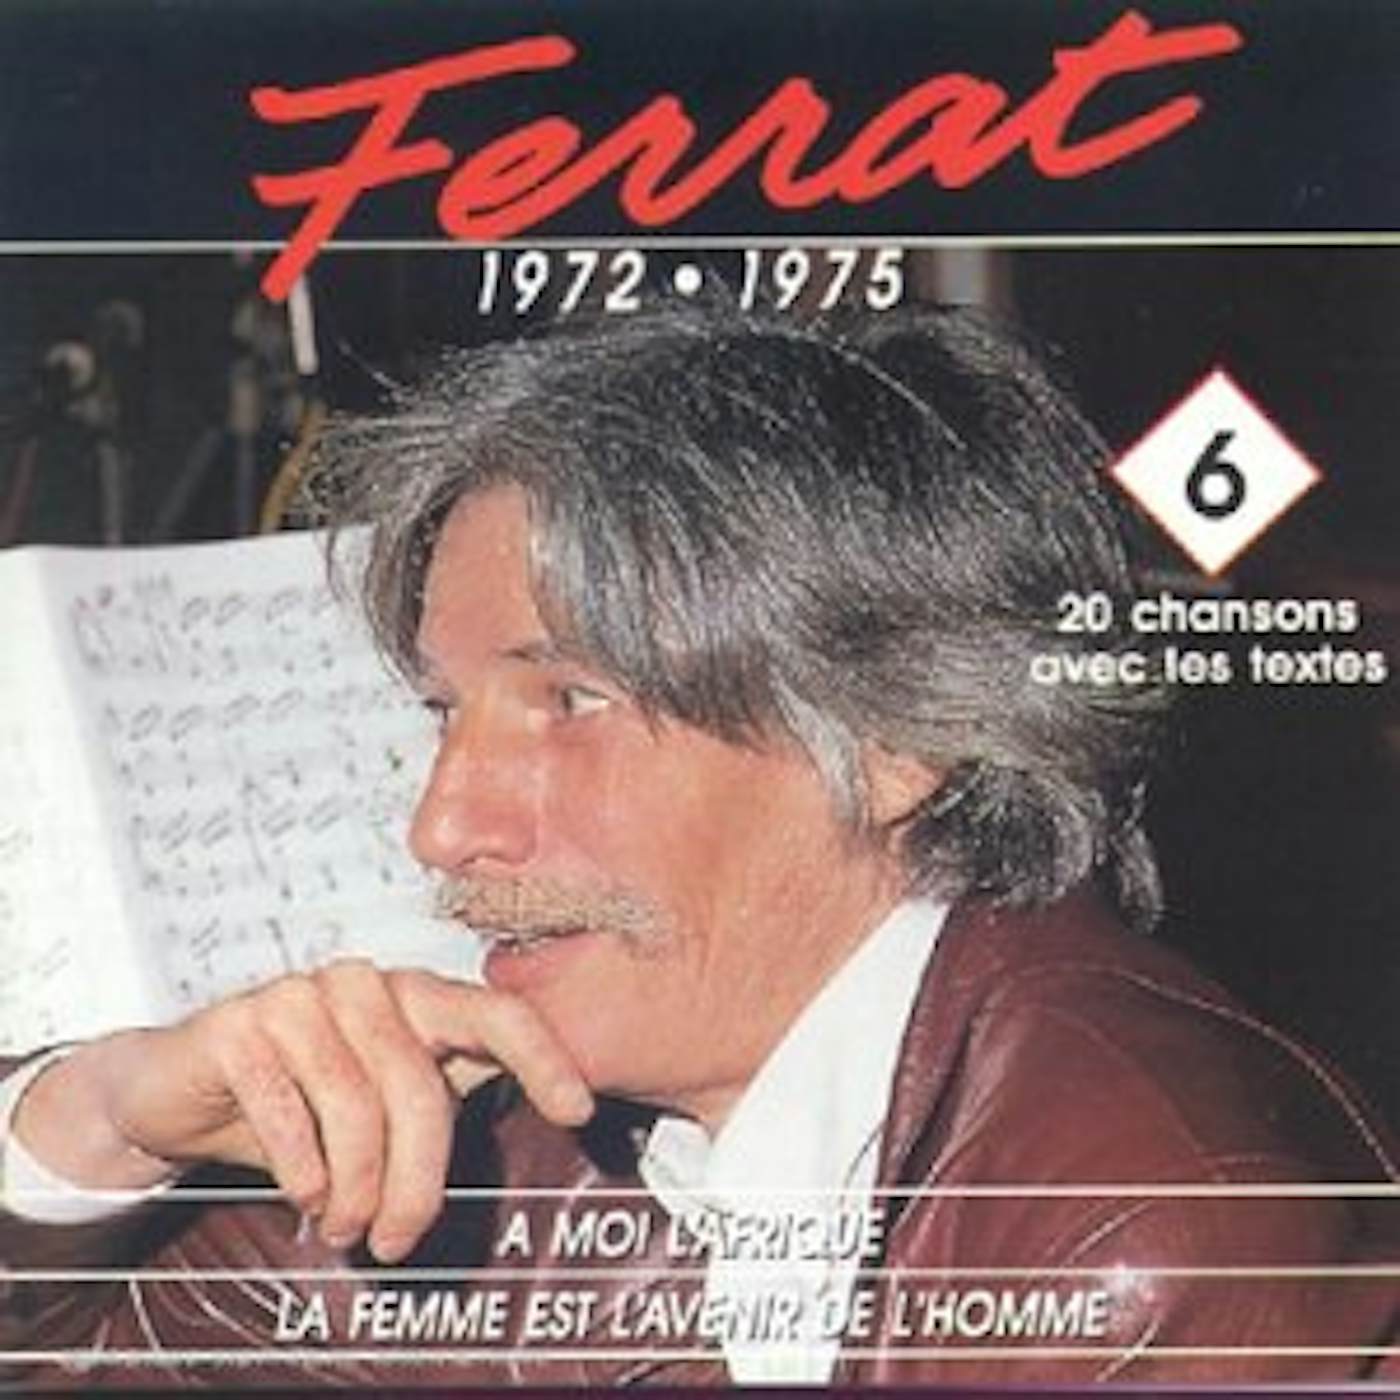 Jean Ferrat MOI L'AFRIQUE 6 CD